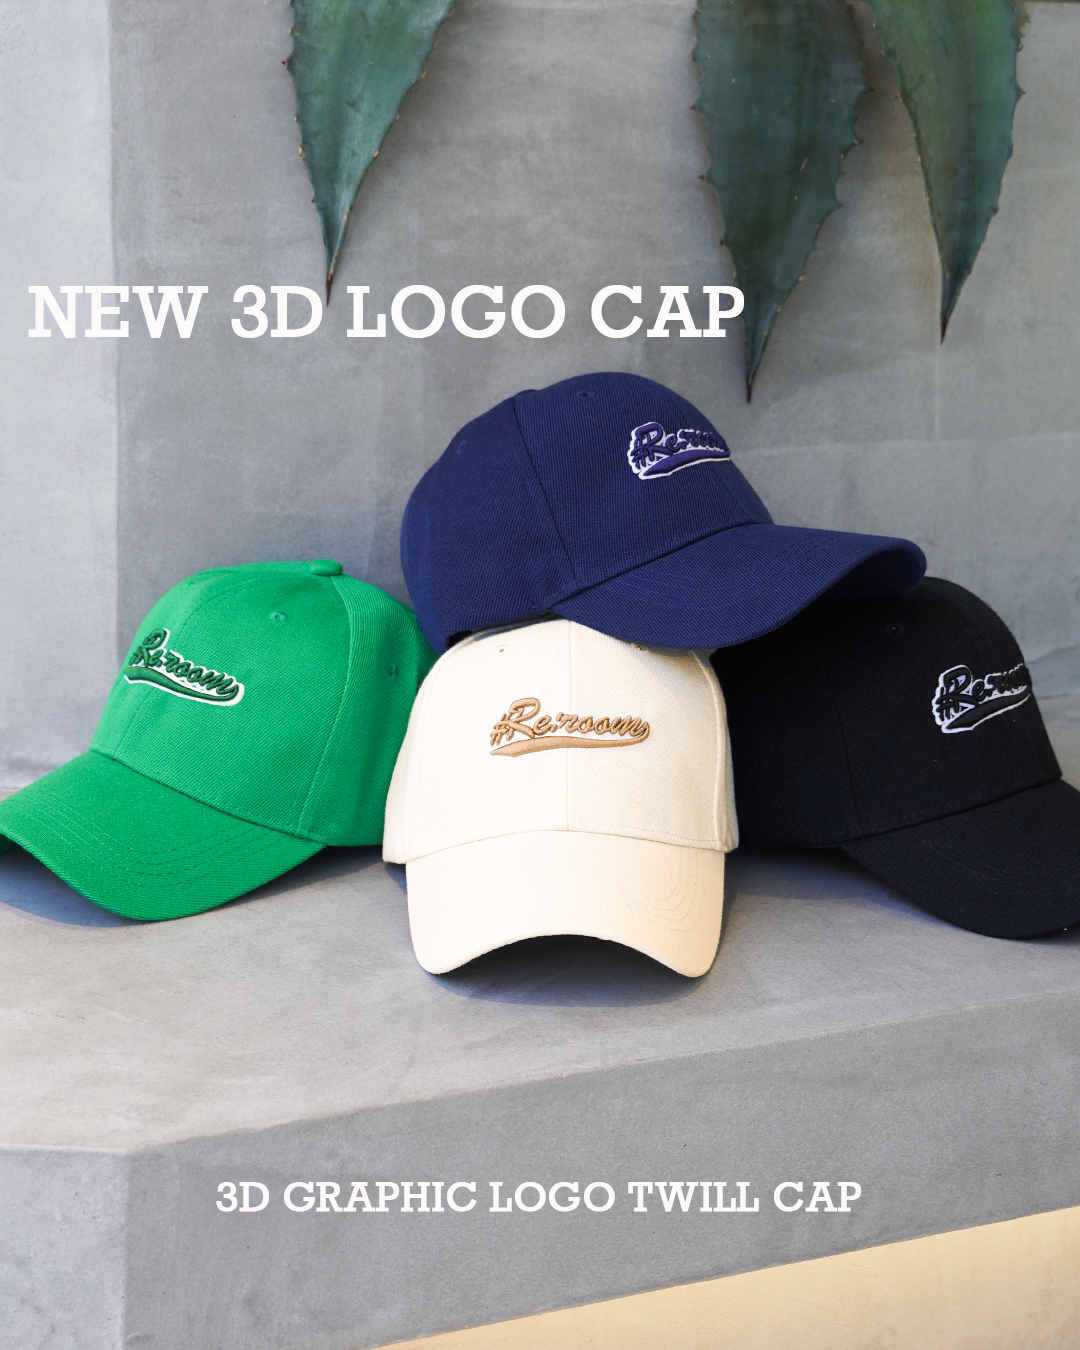 3D GRAPHIC LOGO TWILL CAP